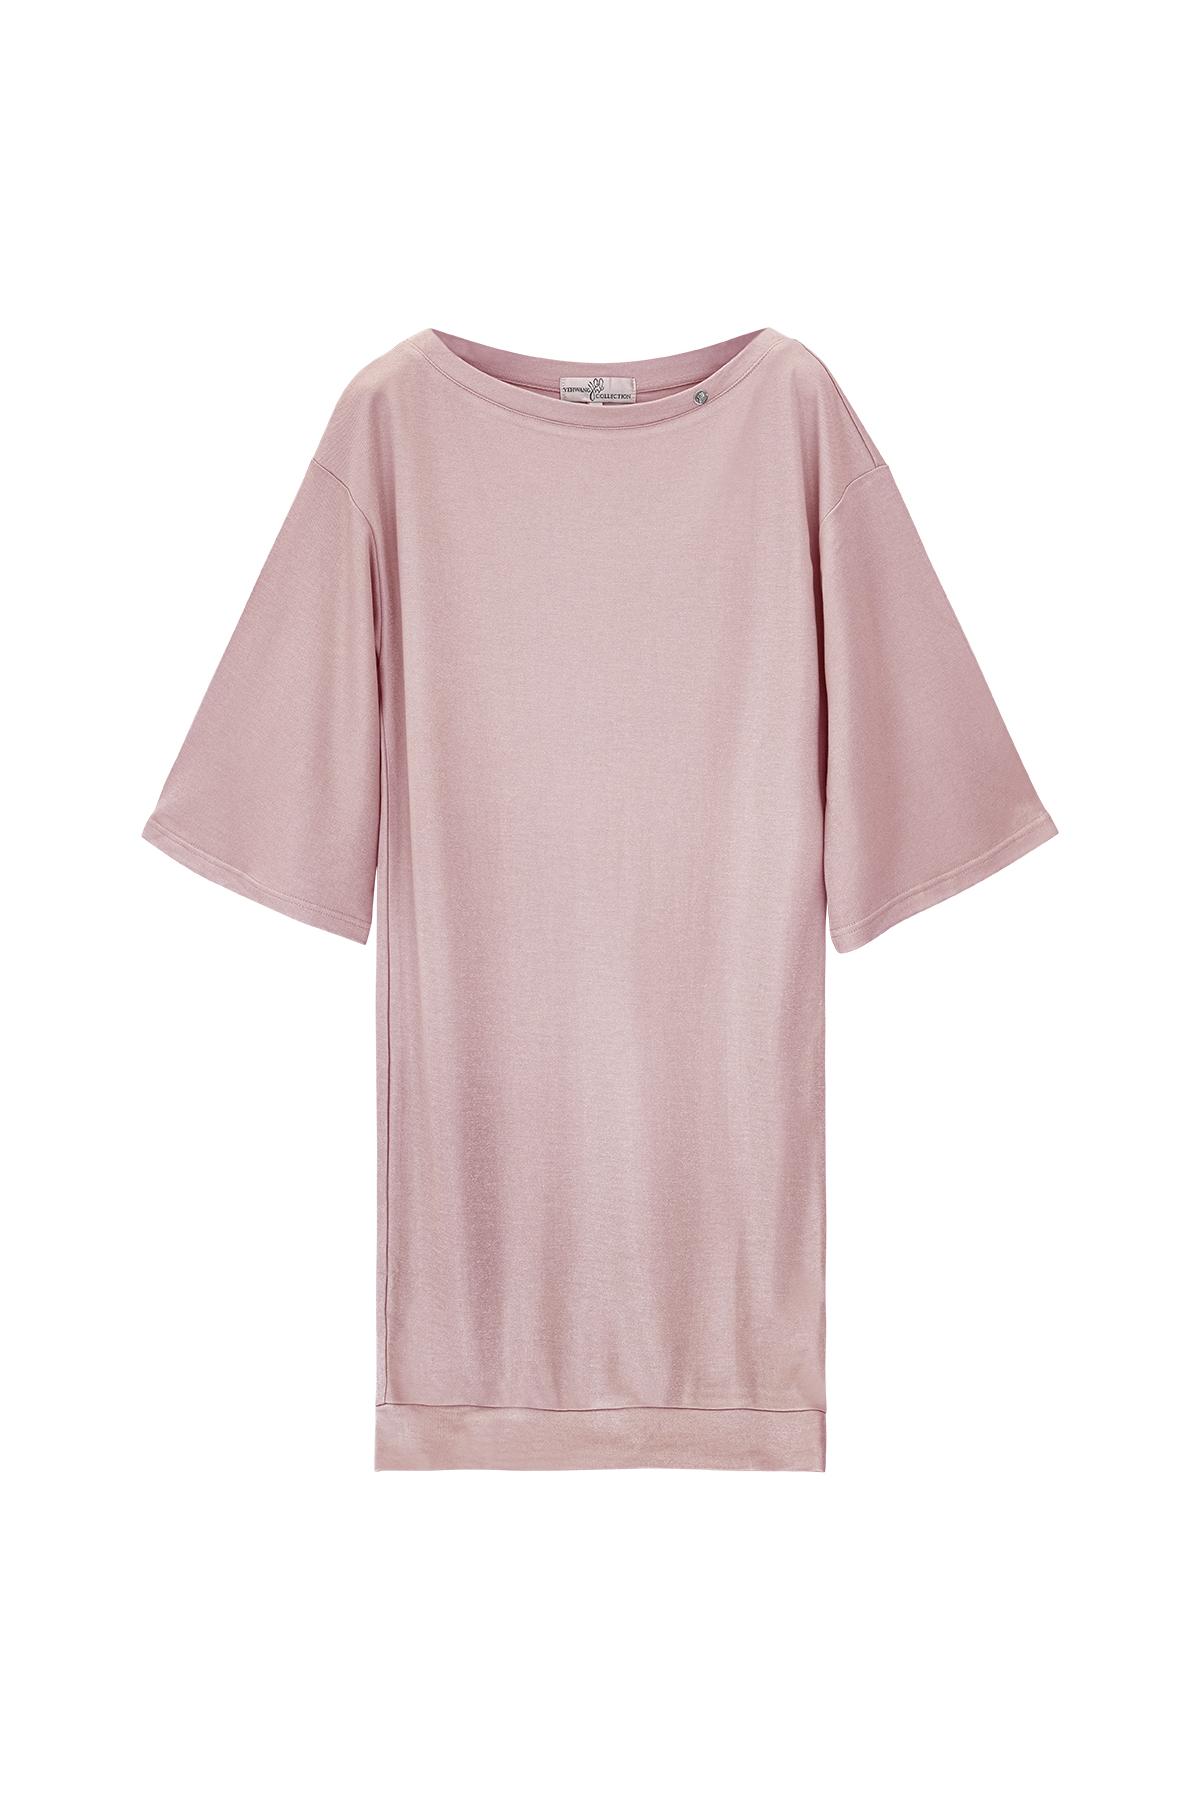 Parlak kaplamalı tişört elbise Pink L h5 